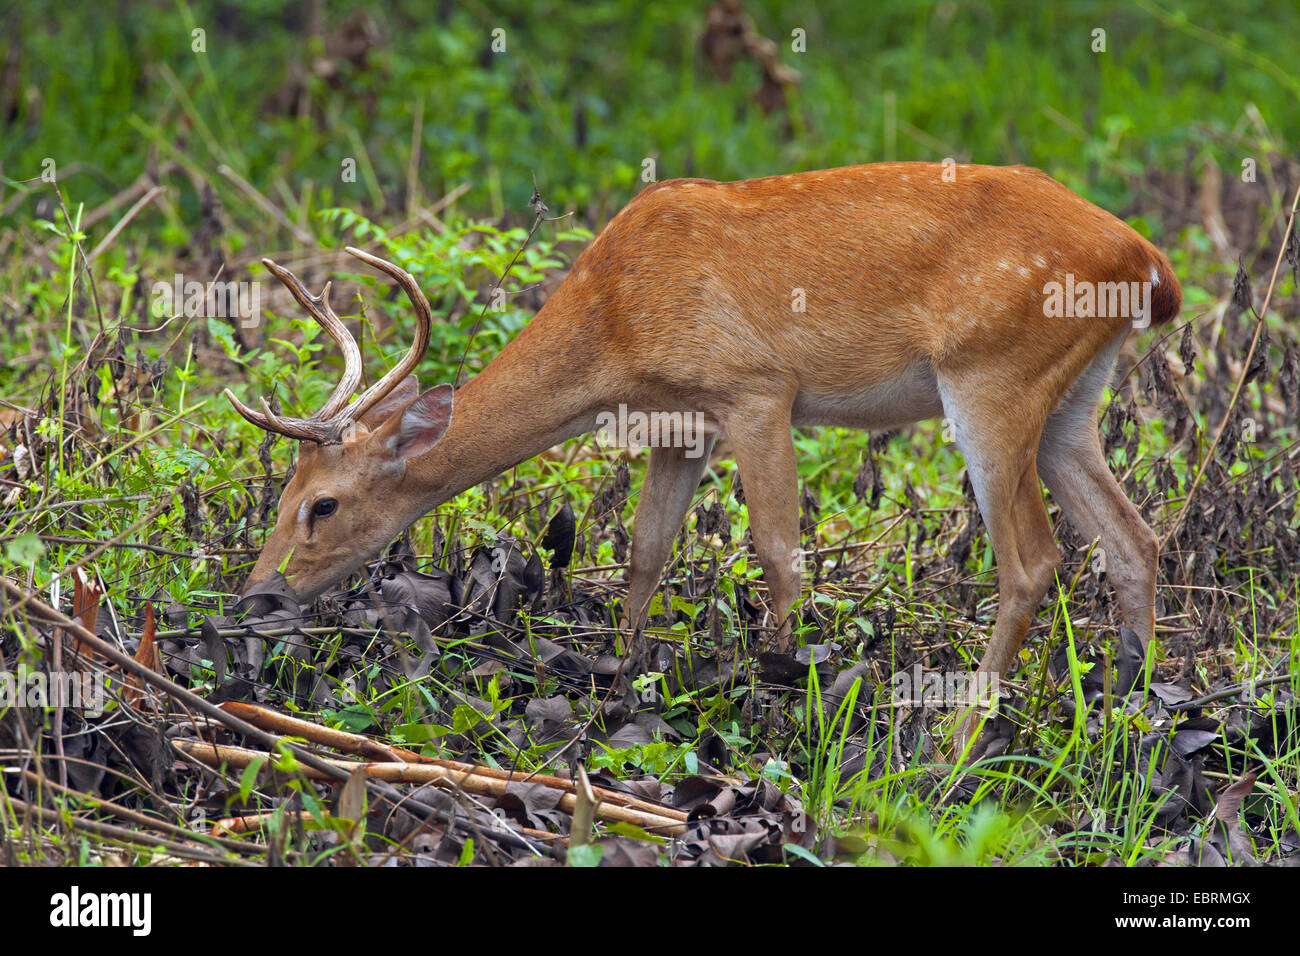 Thamin, Brow-antlered deer, Eld's deer (Panolia eldii, Rucervus eldii, Cervus eldii), grazing, Thailand, Huai Kha Khaeng Wildlife Sanctua Stock Photo